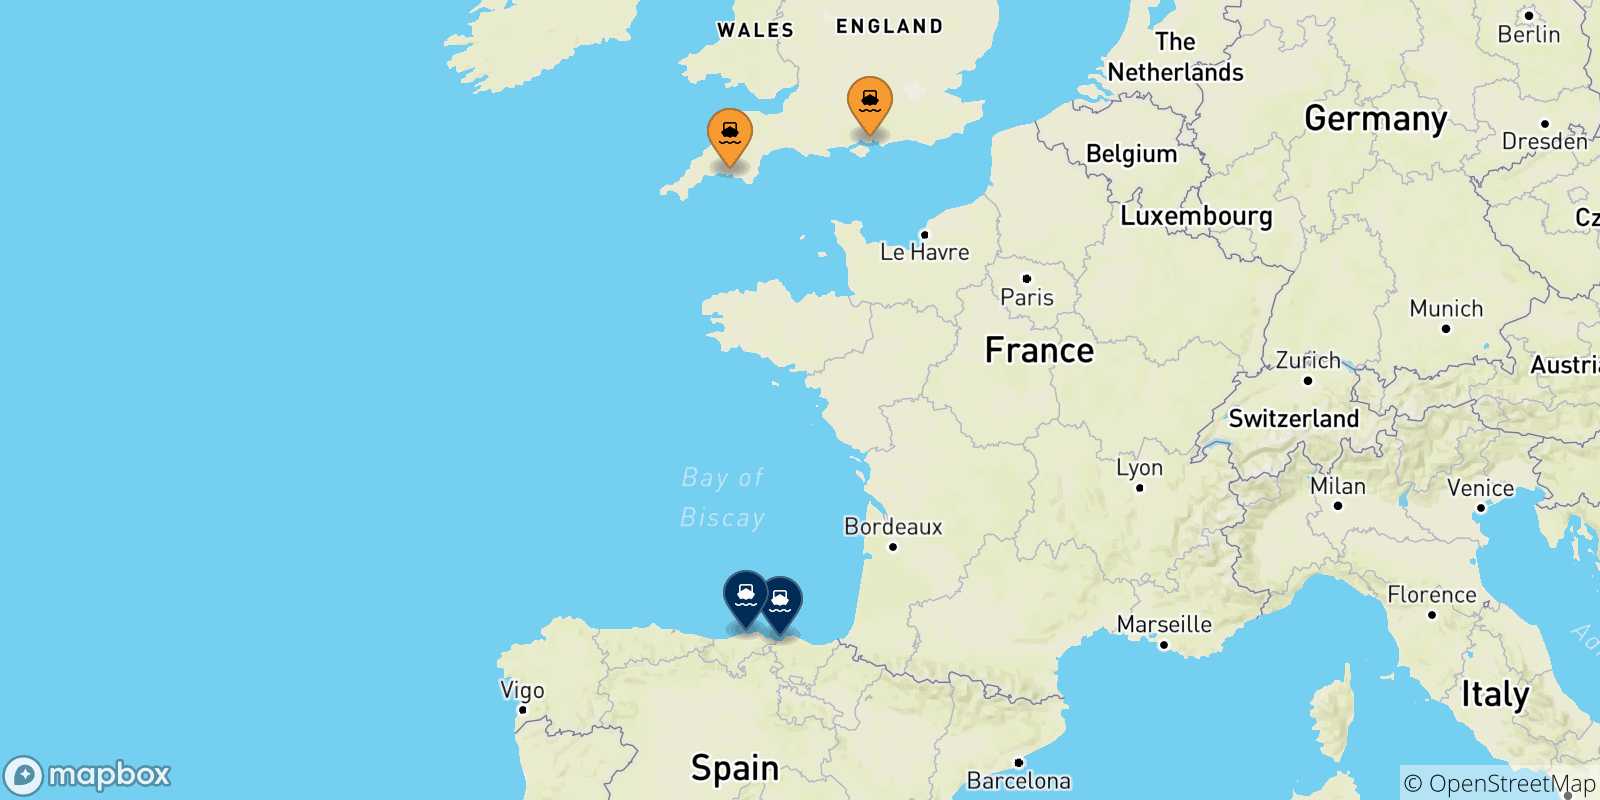 Mappa delle possibili rotte tra il Regno Unito e la Spagna